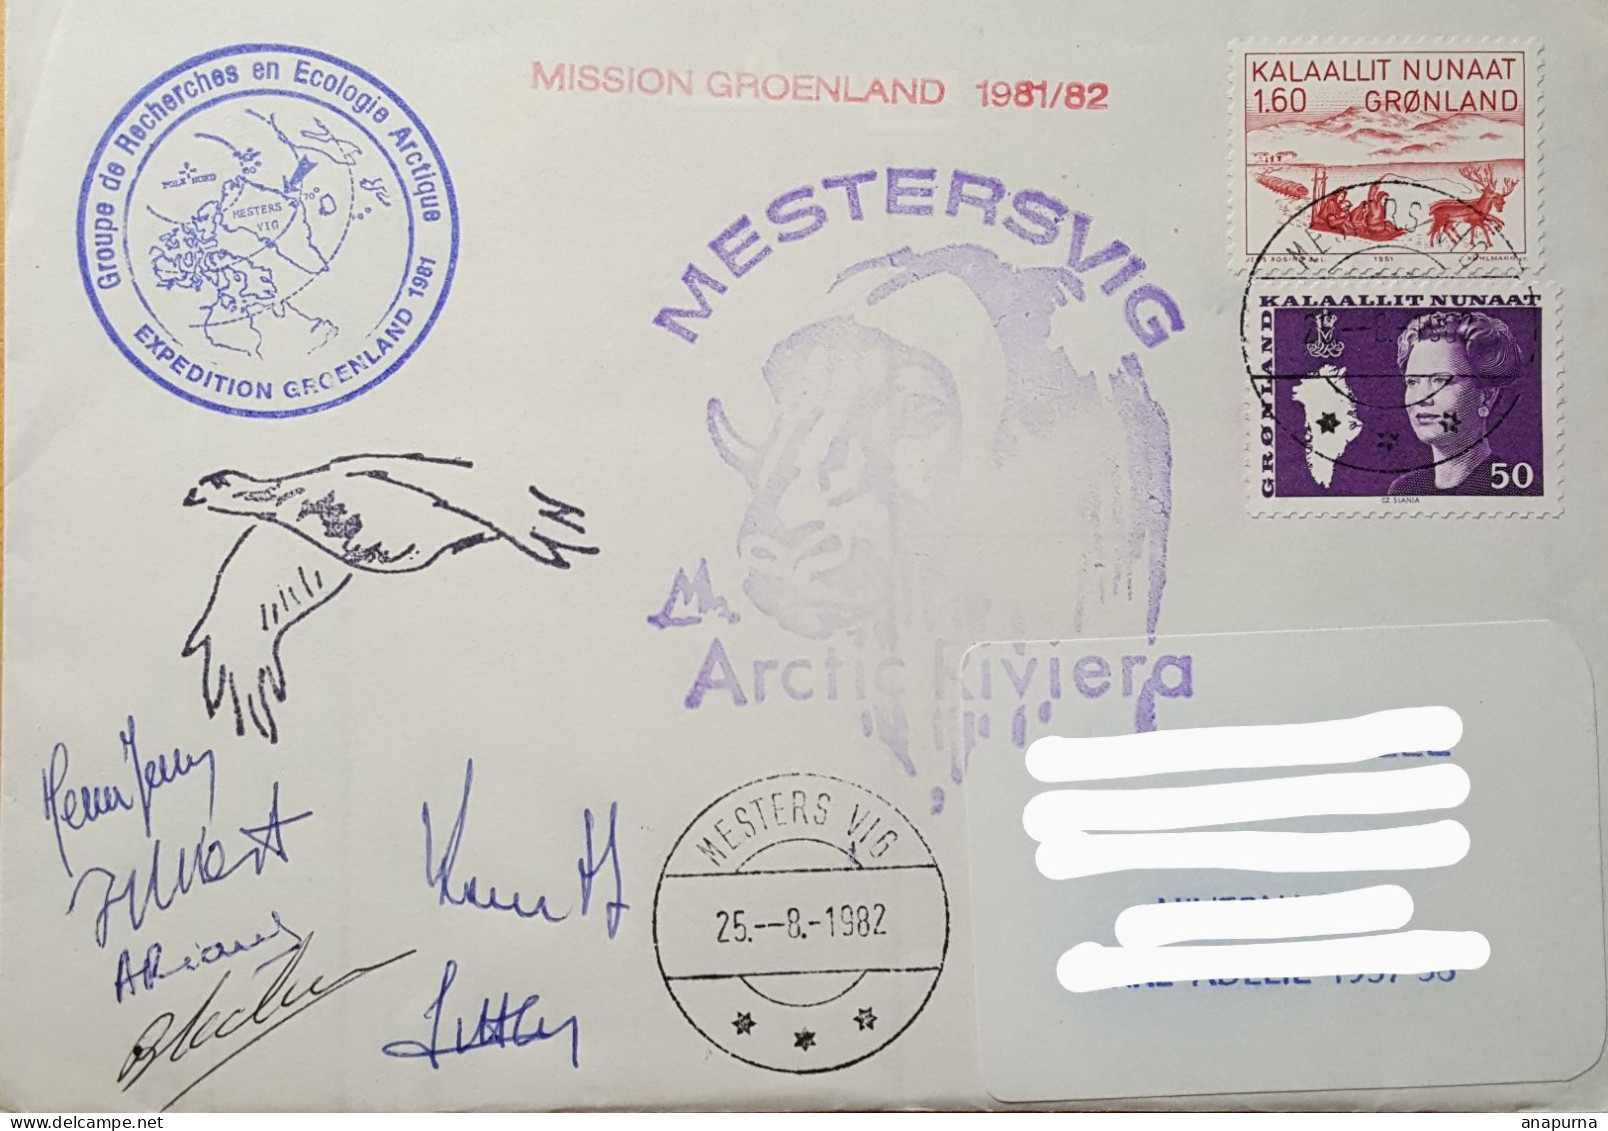 Pli Groenland. Expédition Du Groupe Recherche Ecologie Arctique 81/82. Mestersvig Arctic Riviera. 6 Signatures. - Forschungsprogramme